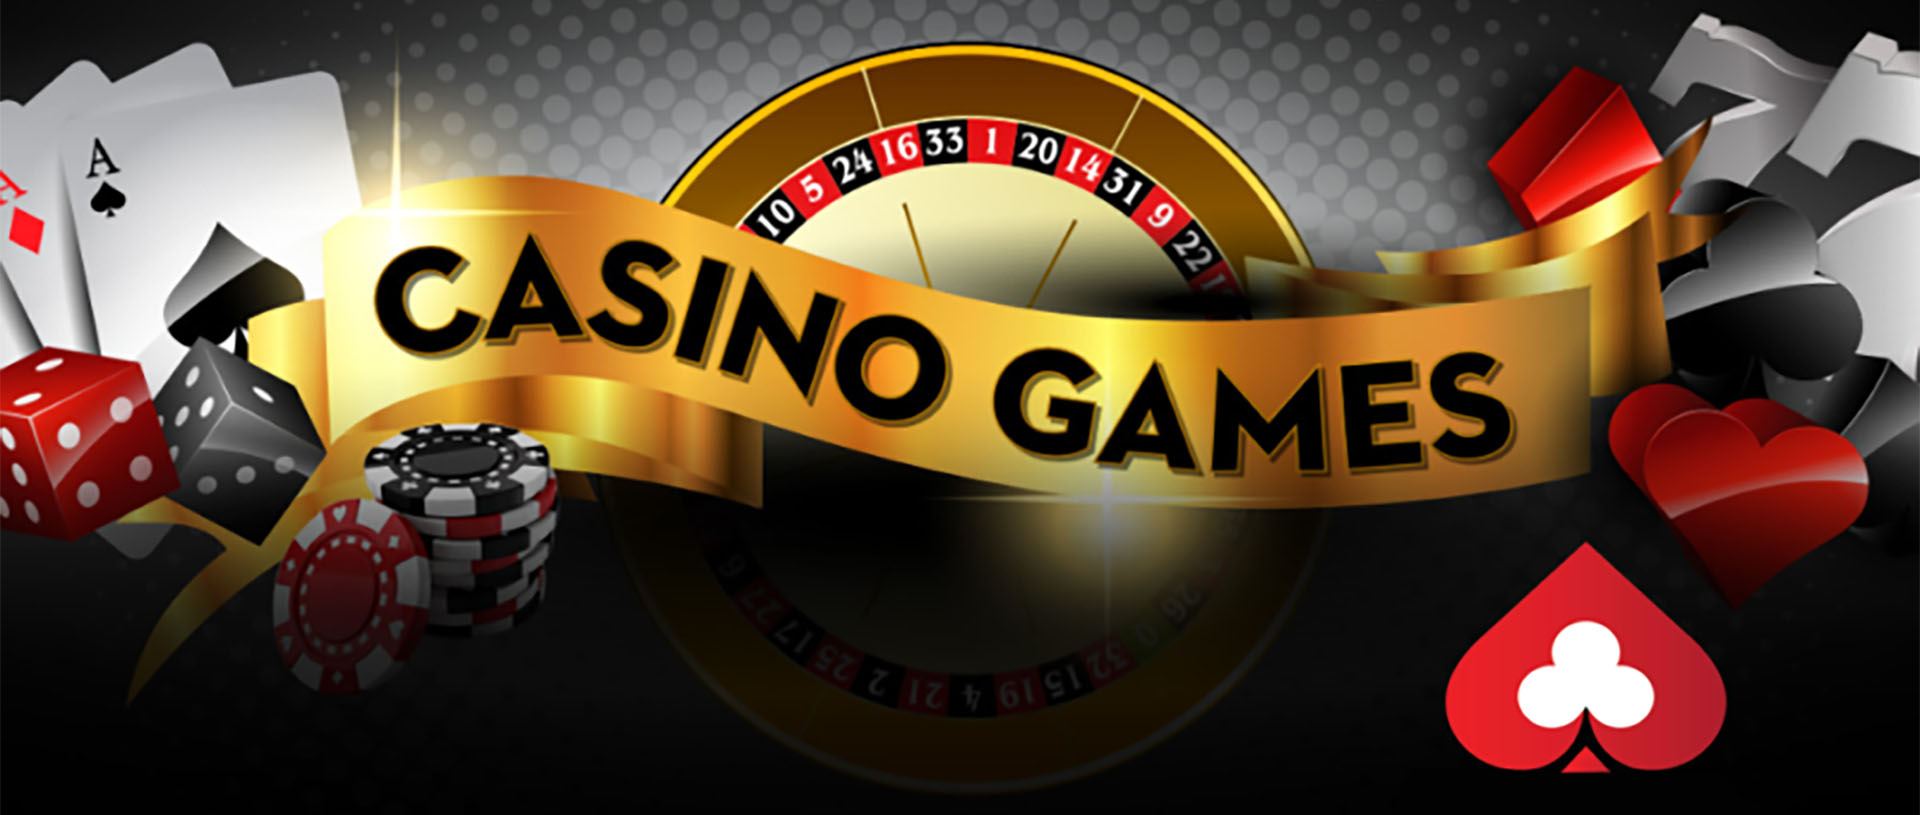 casino-คาสิโนออนไลน์